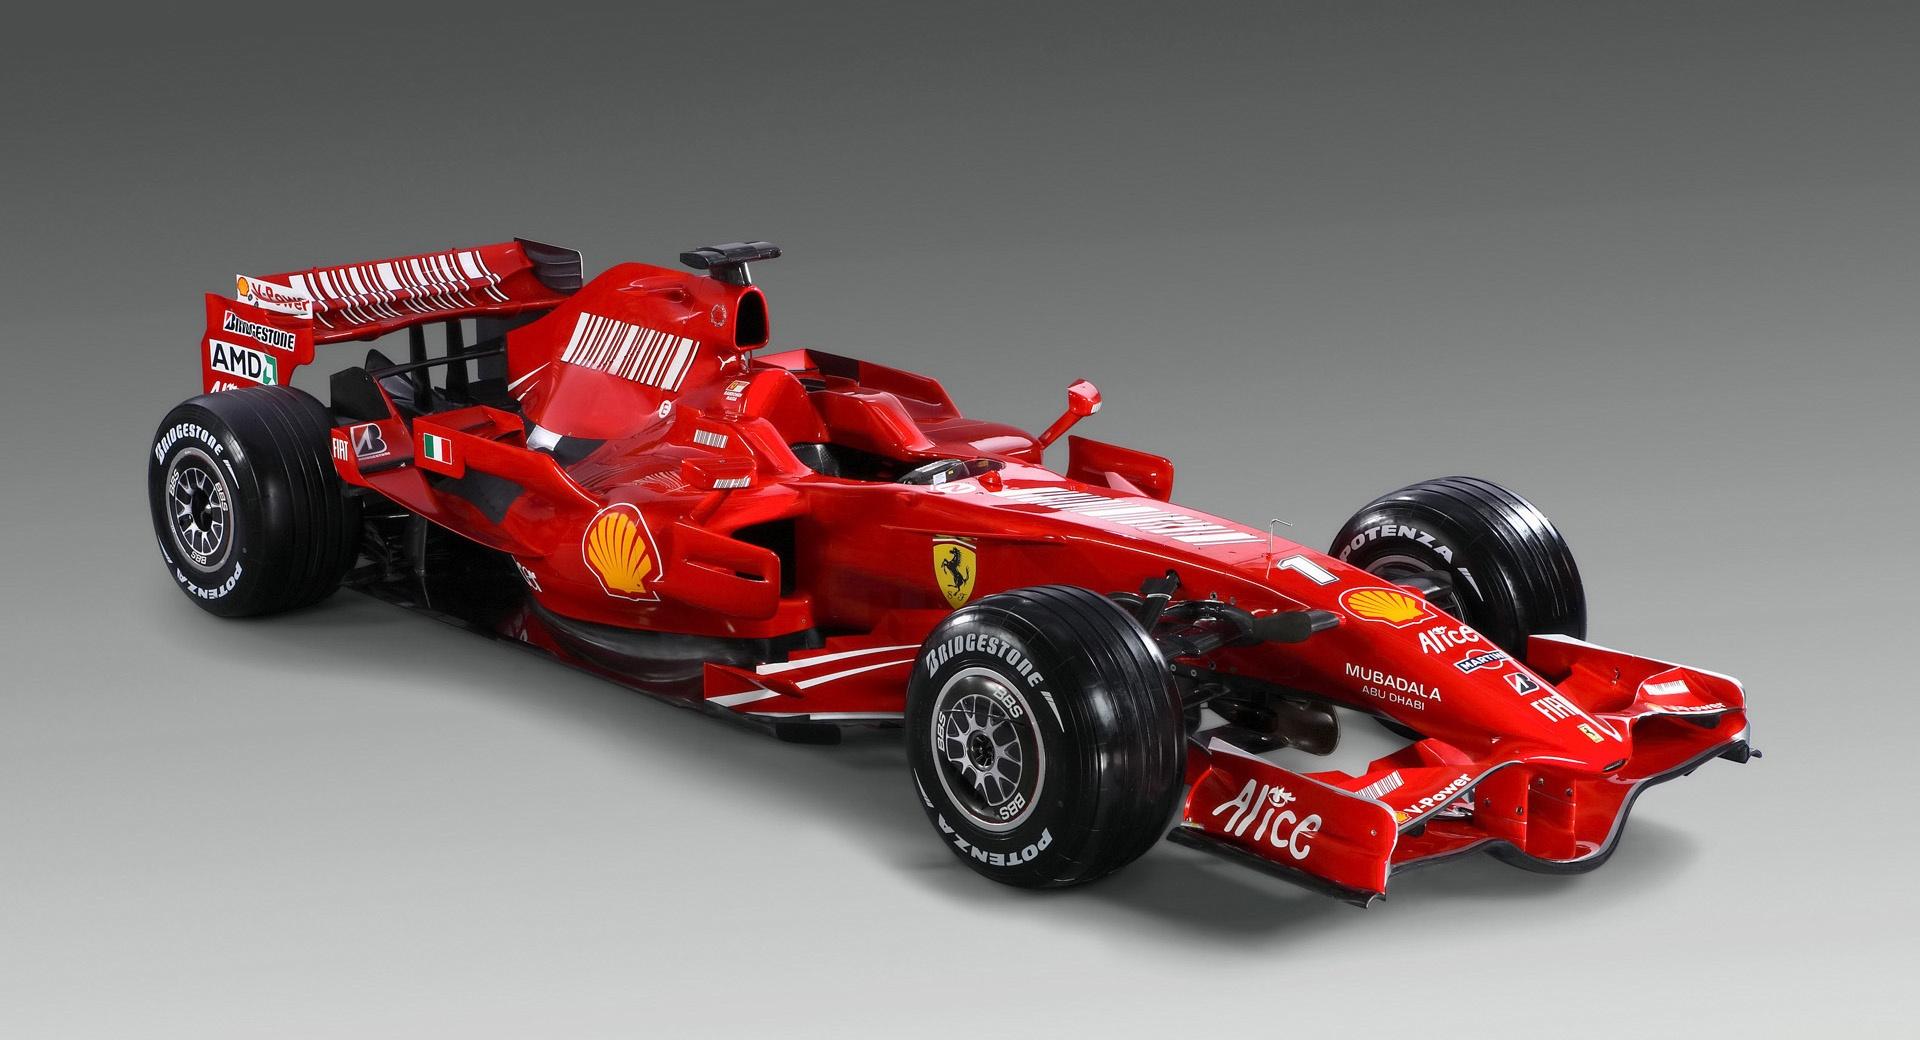 Formula 1 Ferrari F2008 at 2048 x 2048 iPad size wallpapers HD quality